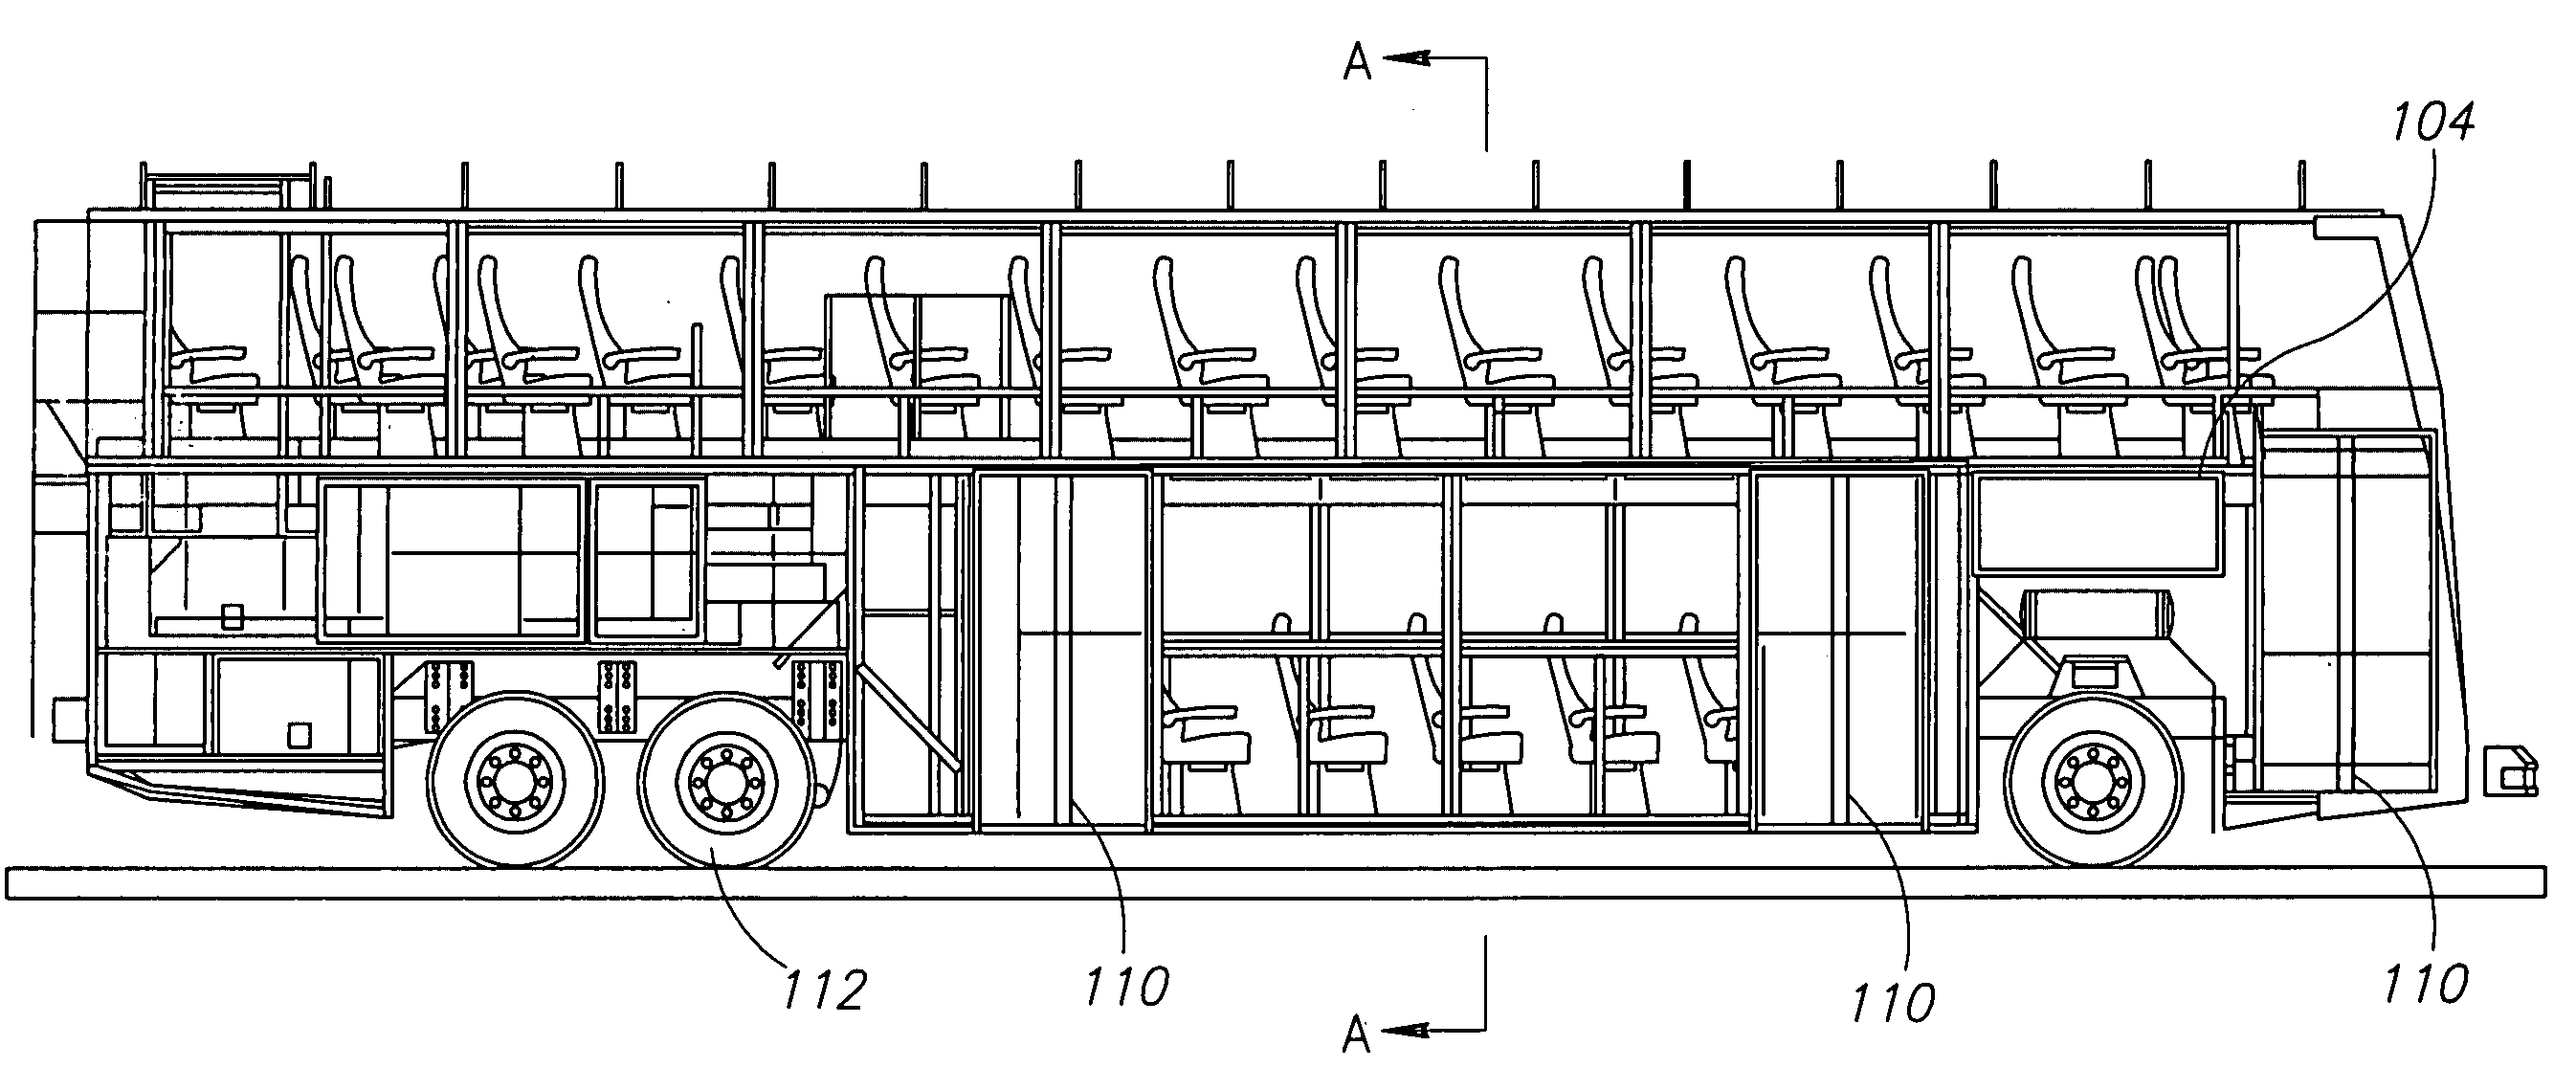 Low profile doble deck bus